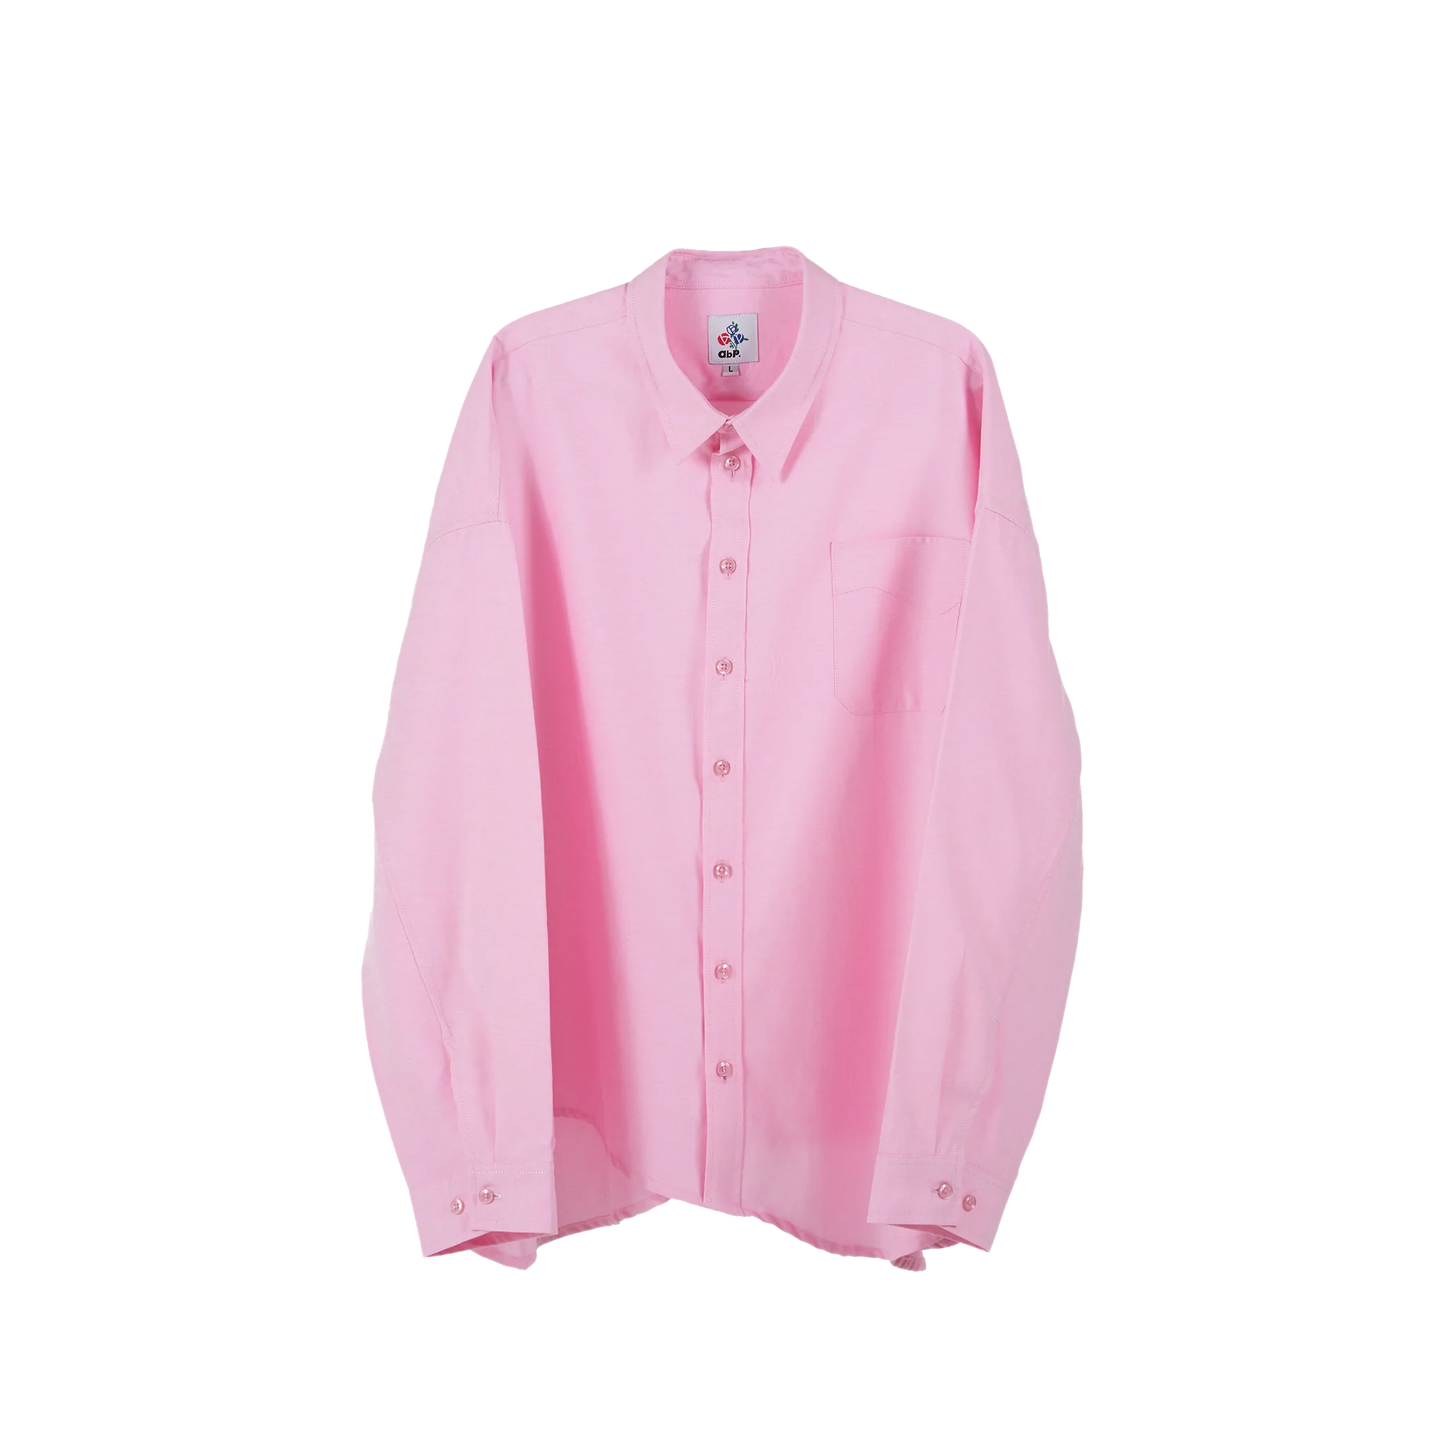 abp. Big Bro Shirt - Pink